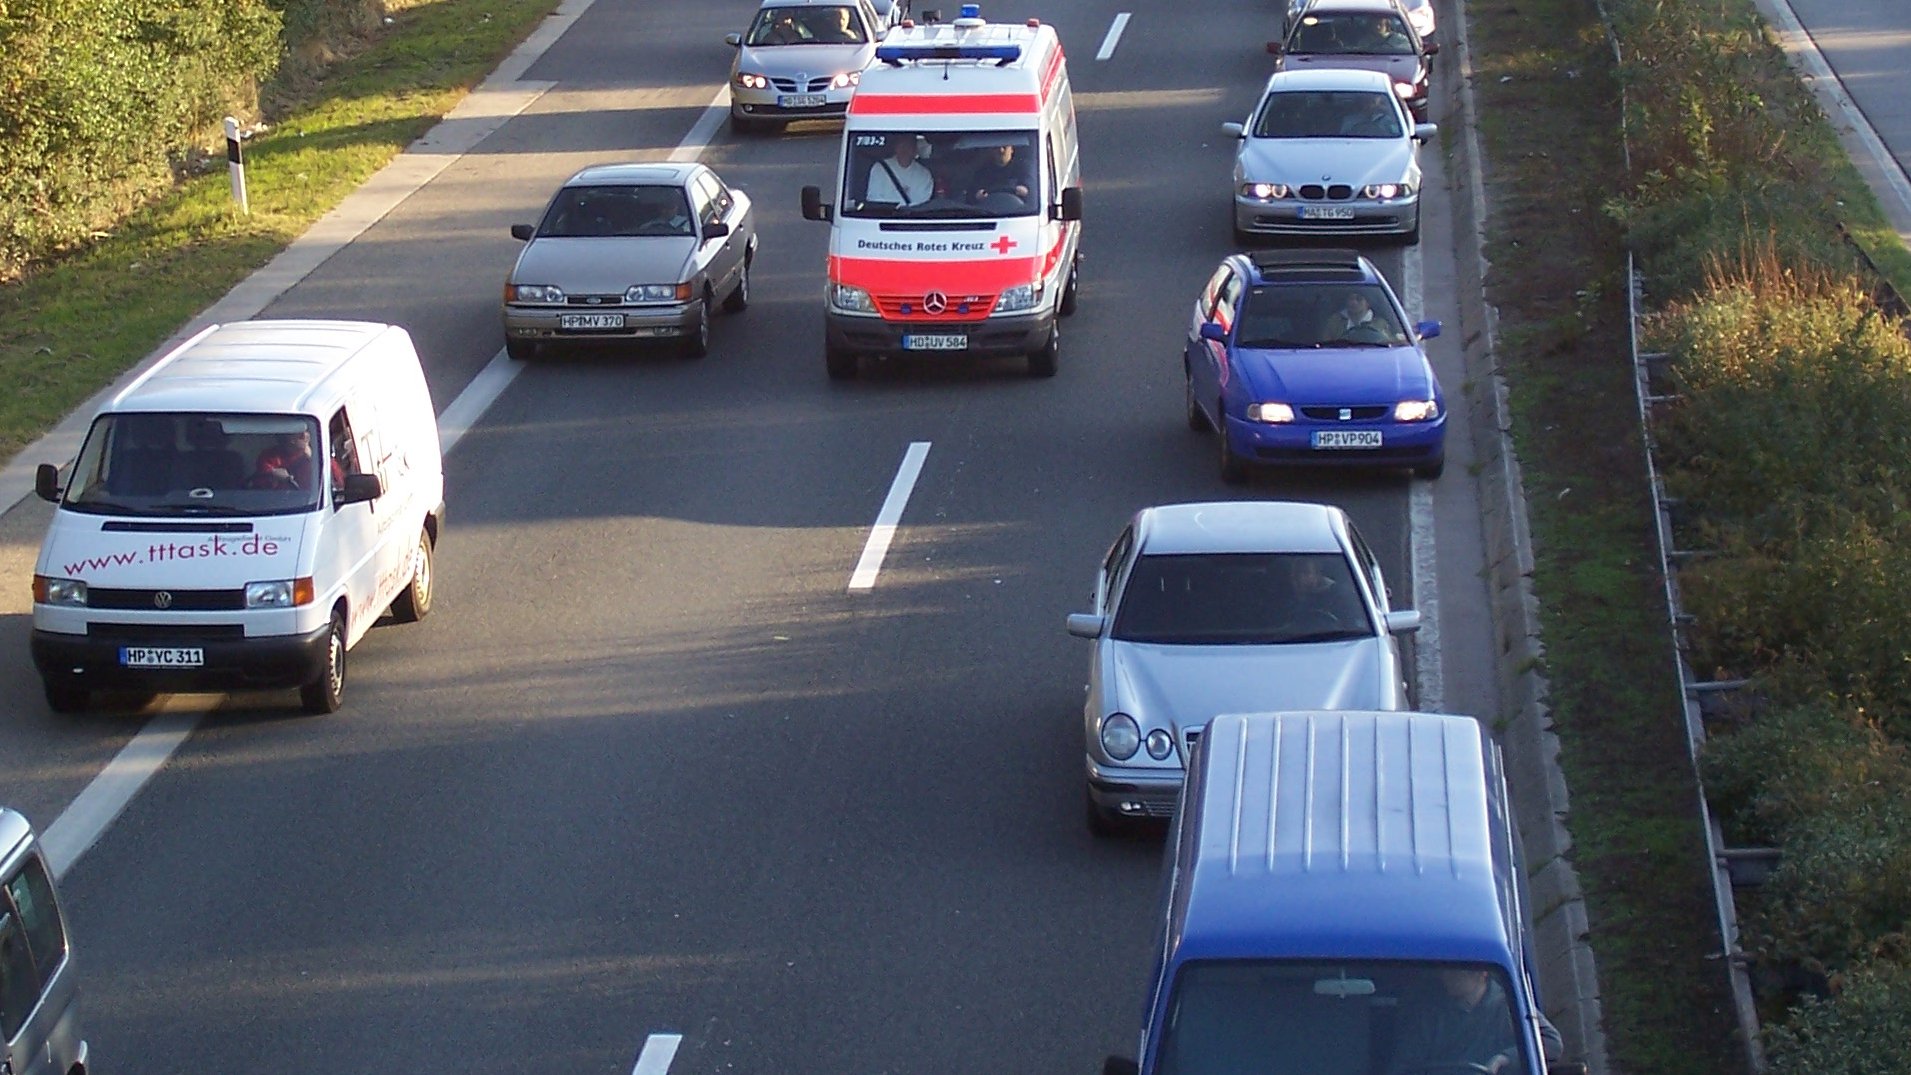 Bild von Autos auf Autobahn, die ordnungsgemäß eine Rettungsgasse bilden und so einem Einsatzwagen die Durchfahrt ermöglichen.